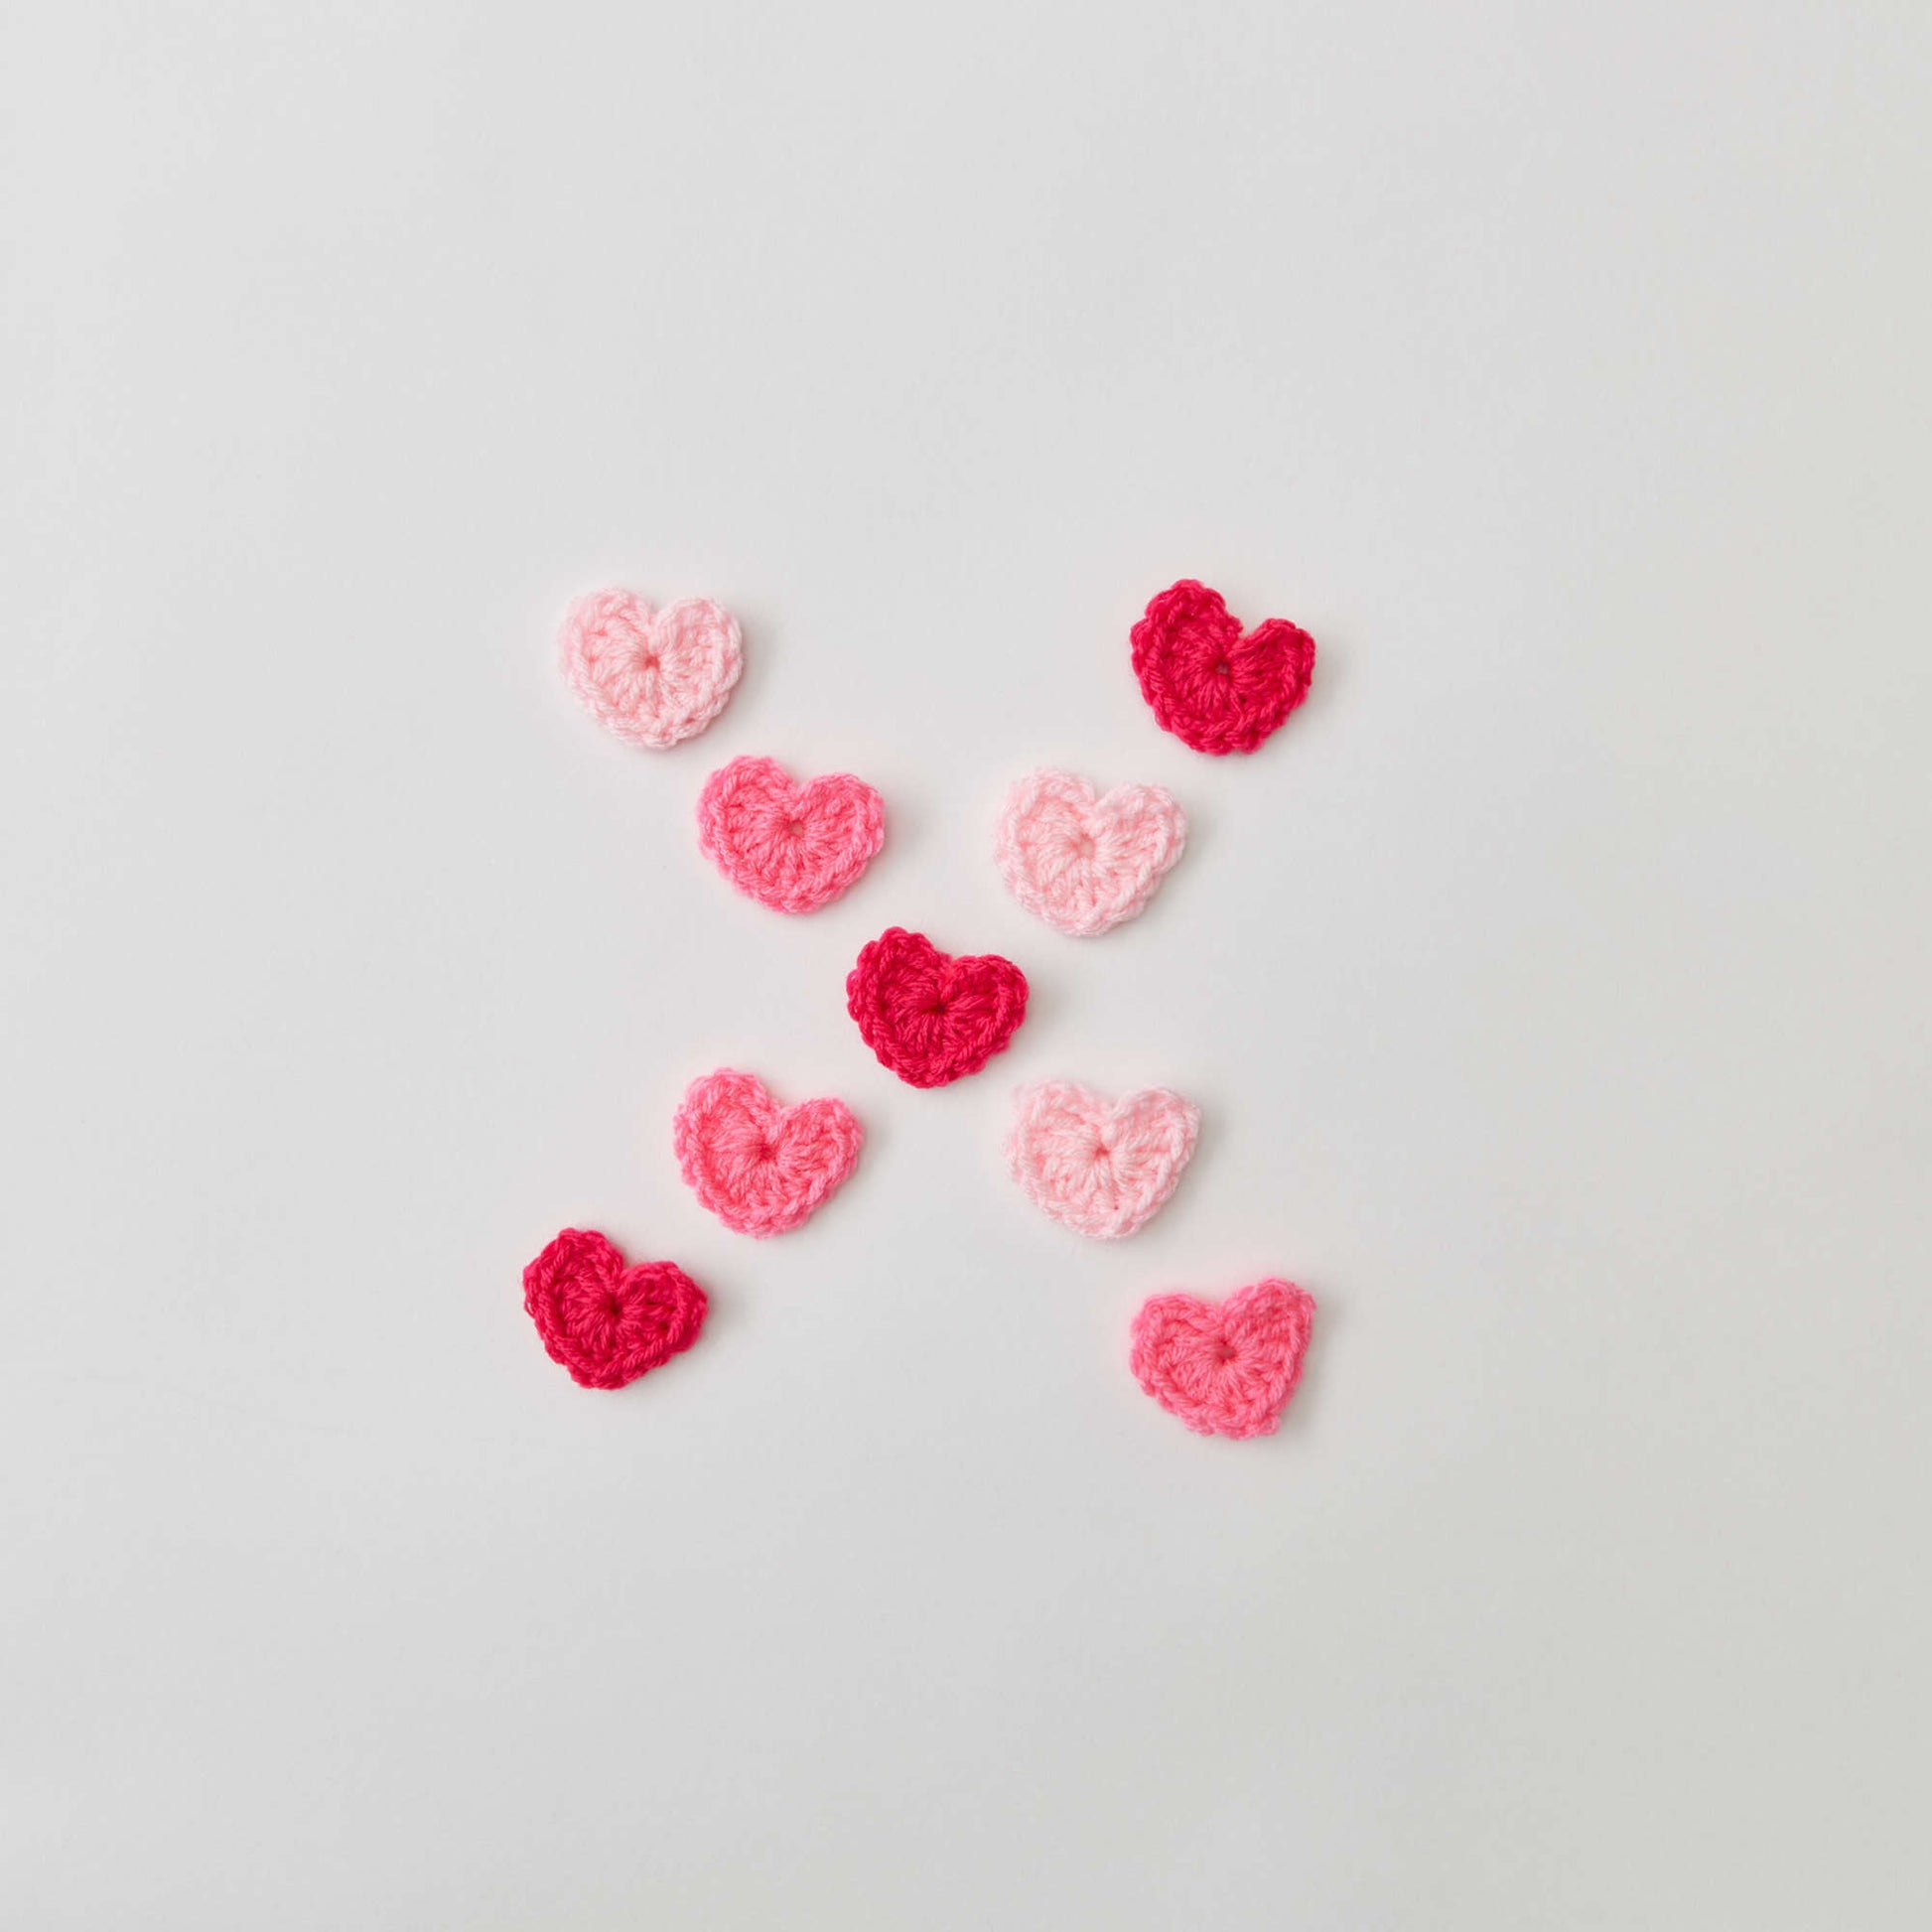 Free Red Heart Crochet Sweet Hearts Pattern